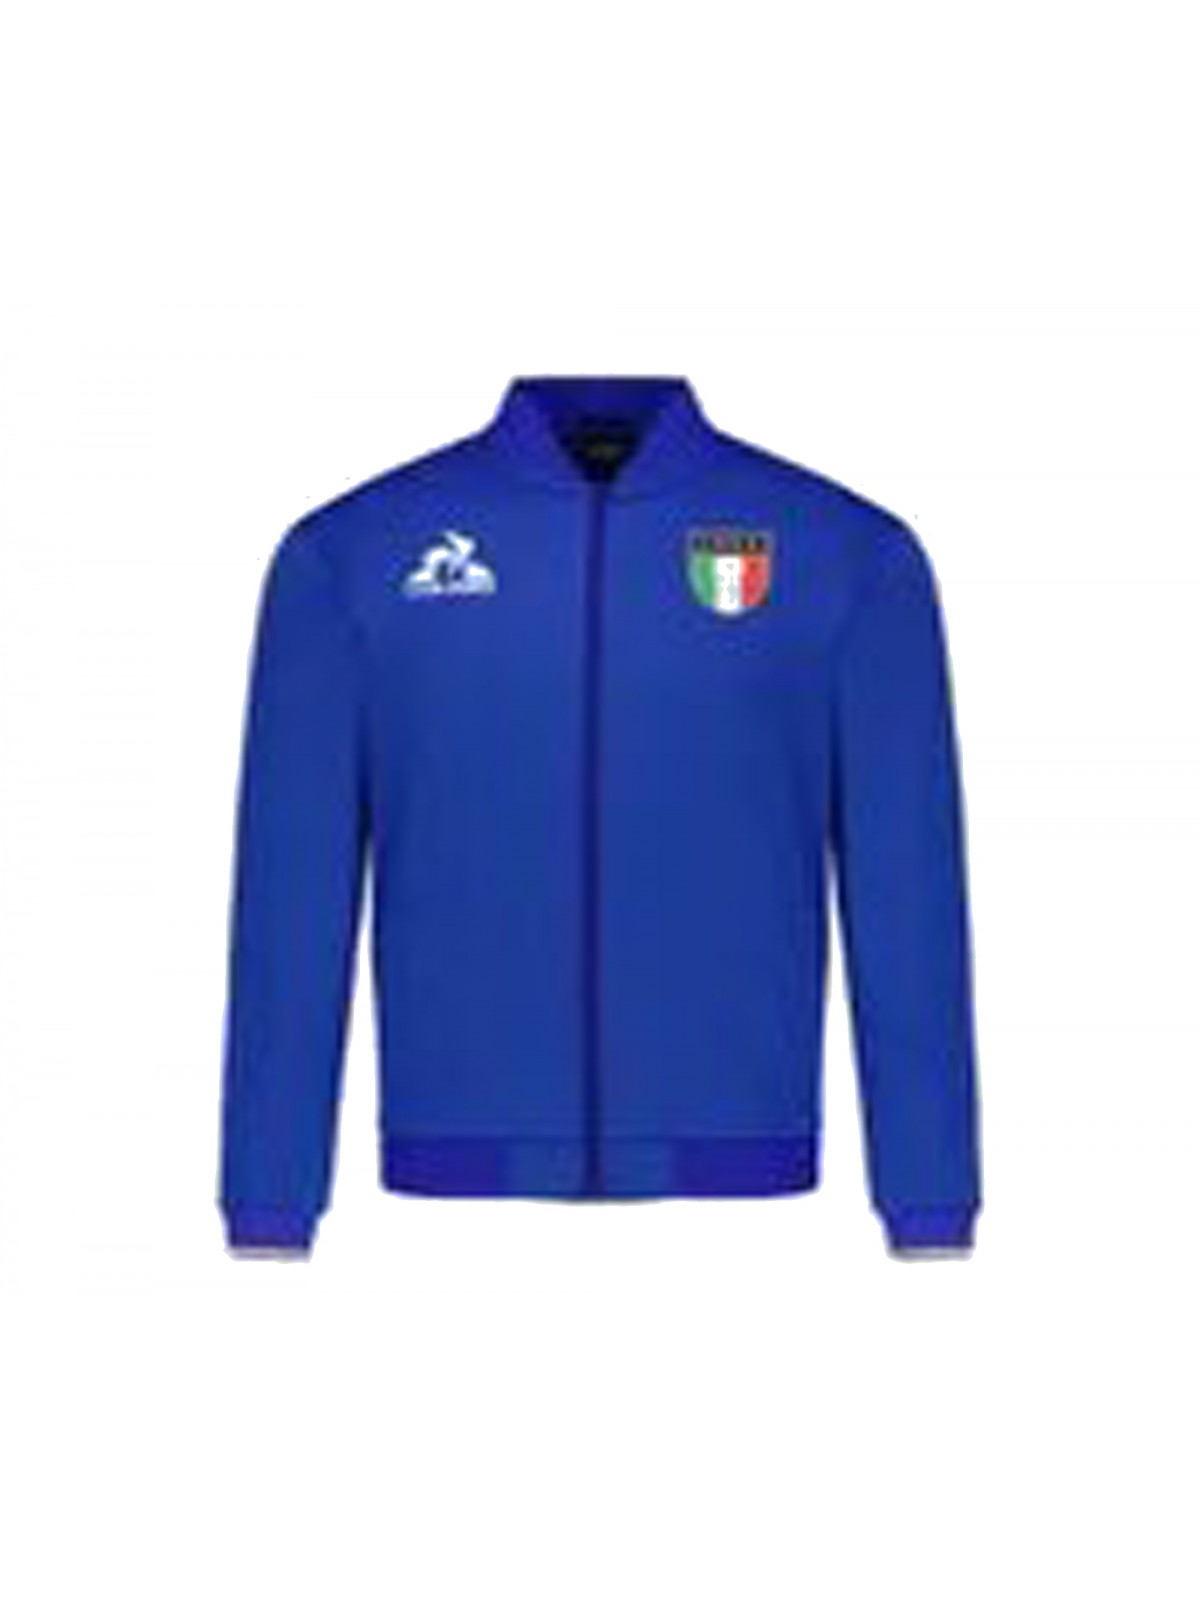 Le Coq Sportif veste sweat zippée ITALIE 82 bleu azur